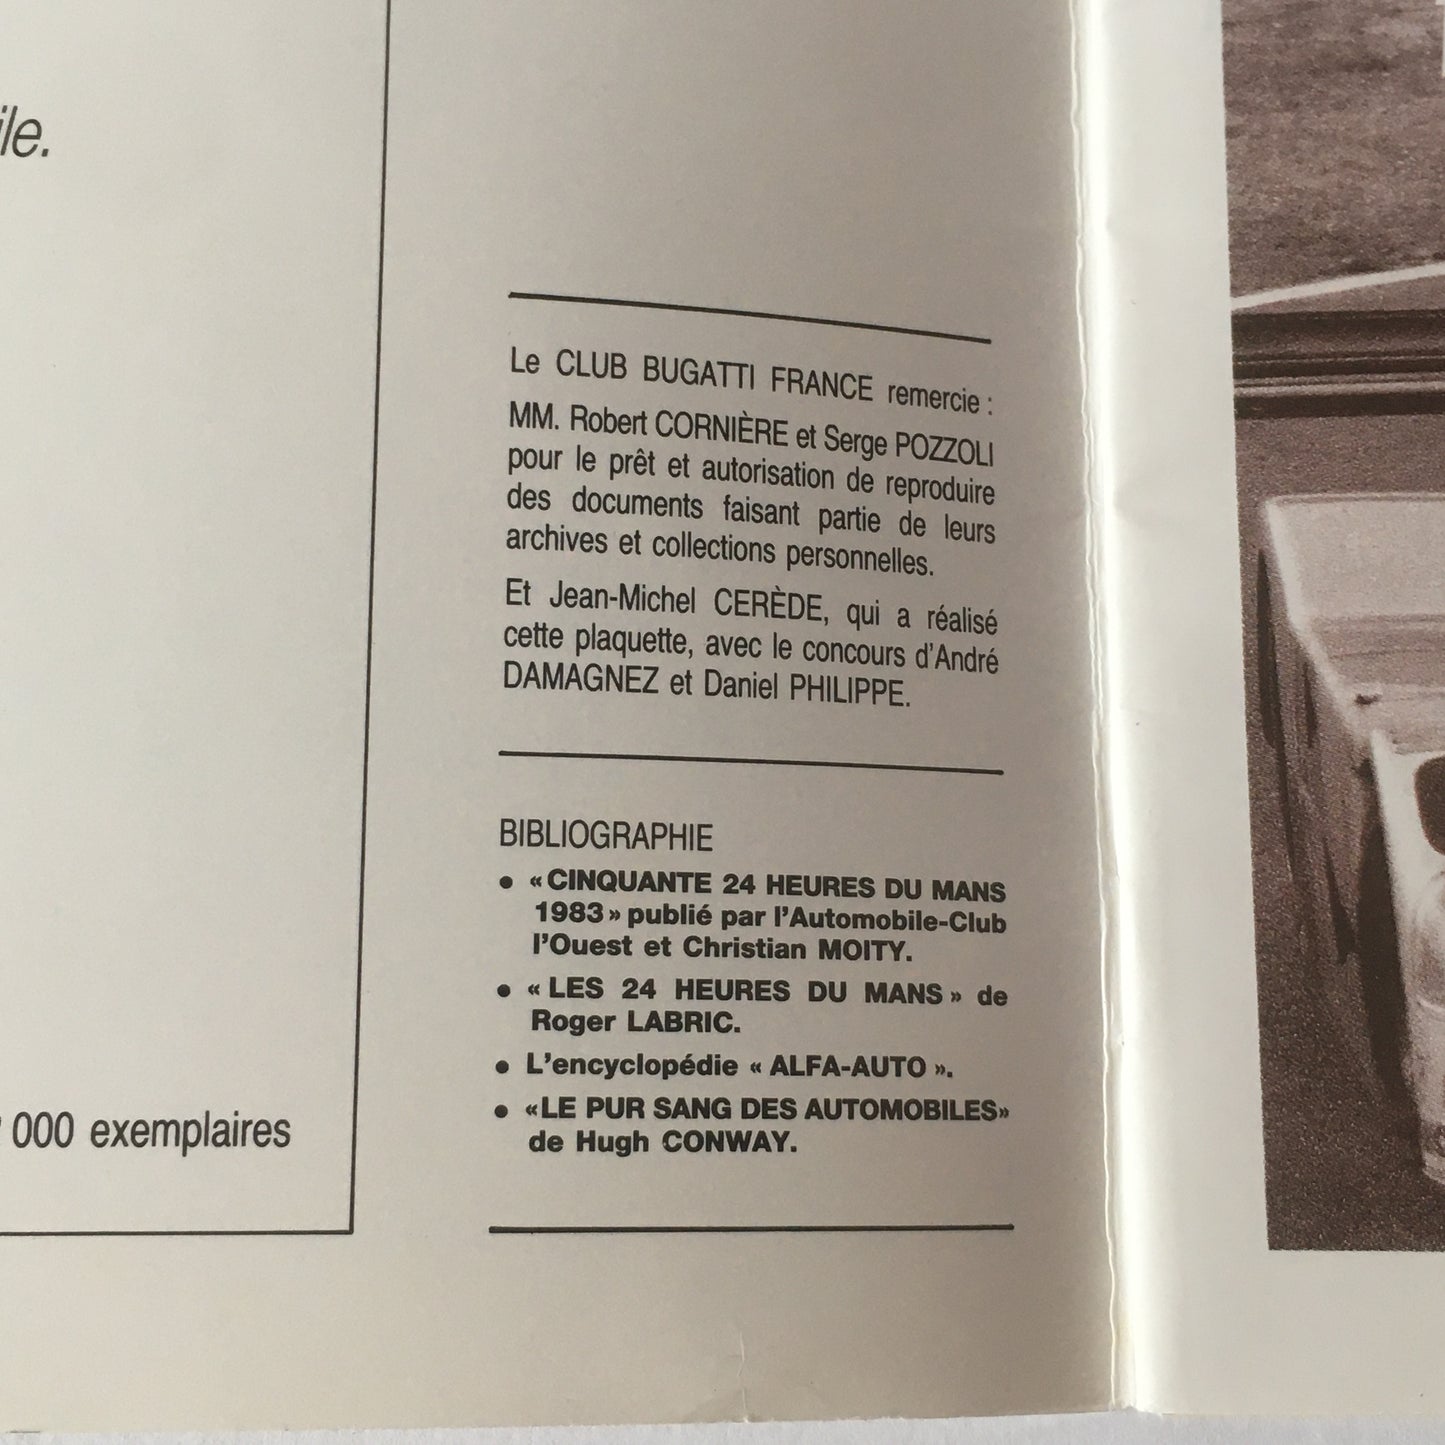 Bugatti, Brochure Giubileo della Vittoria Bugatti alla 24 Ore di Le Mans 1939 - 1989 Edizione Limitata